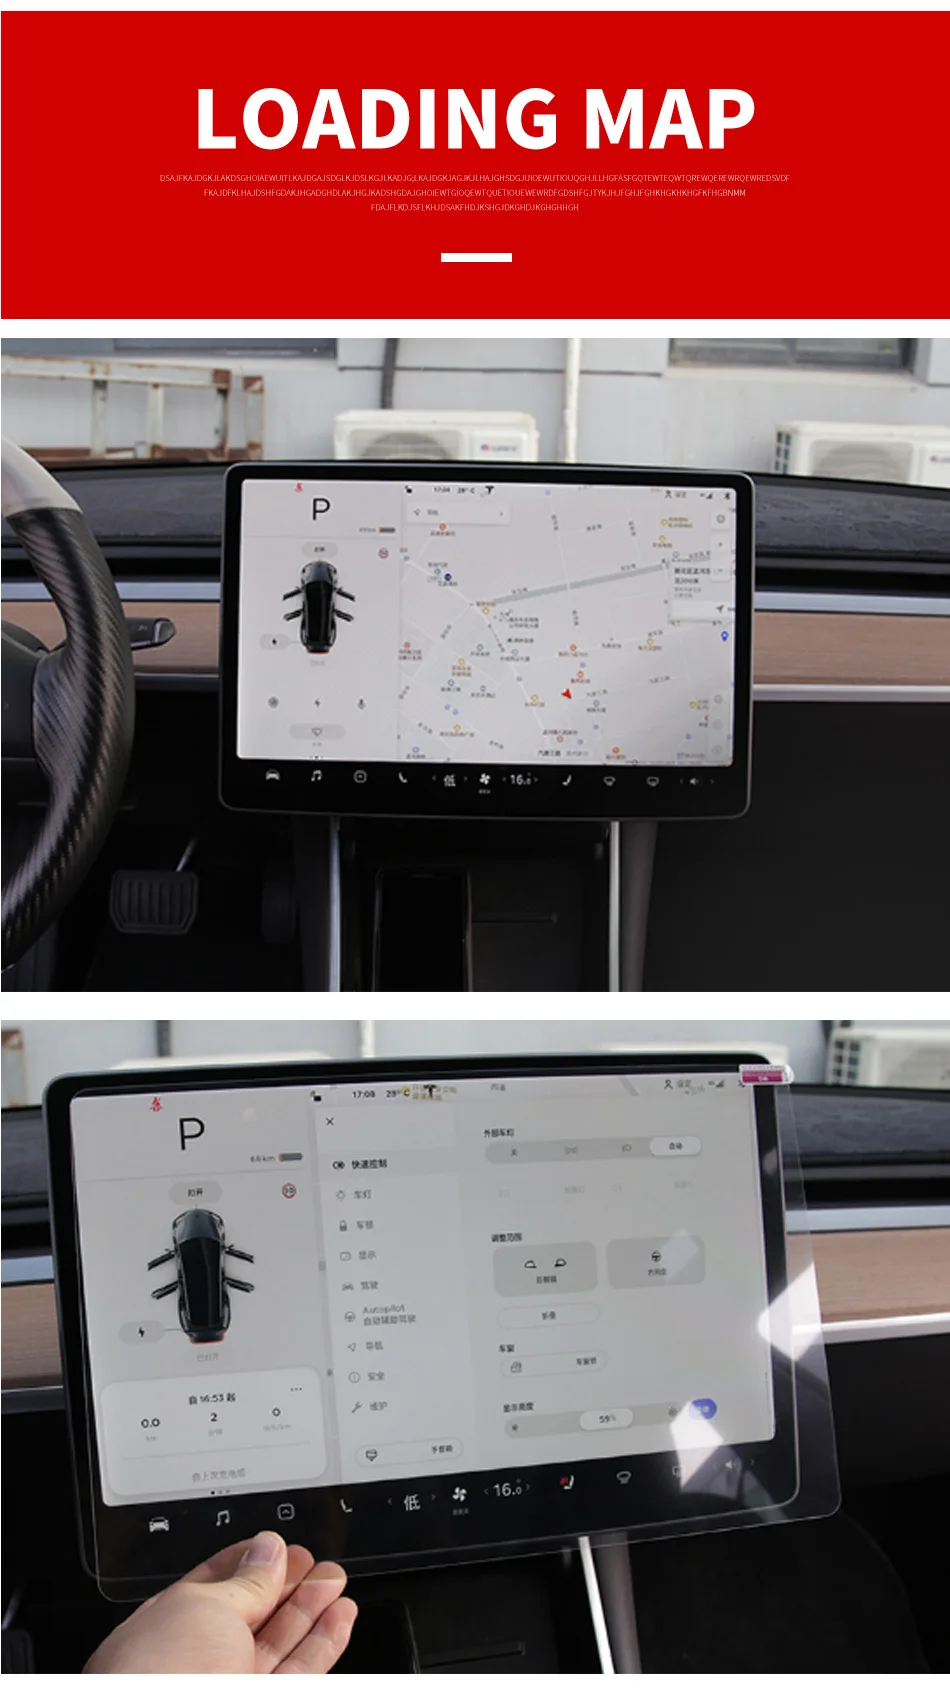 Автомобильная навигация Сенсорный экран Закаленное стекло протектор 1" центр управления Сенсорный экран Защитная пленка для Tesla модель 3 Аксессуары